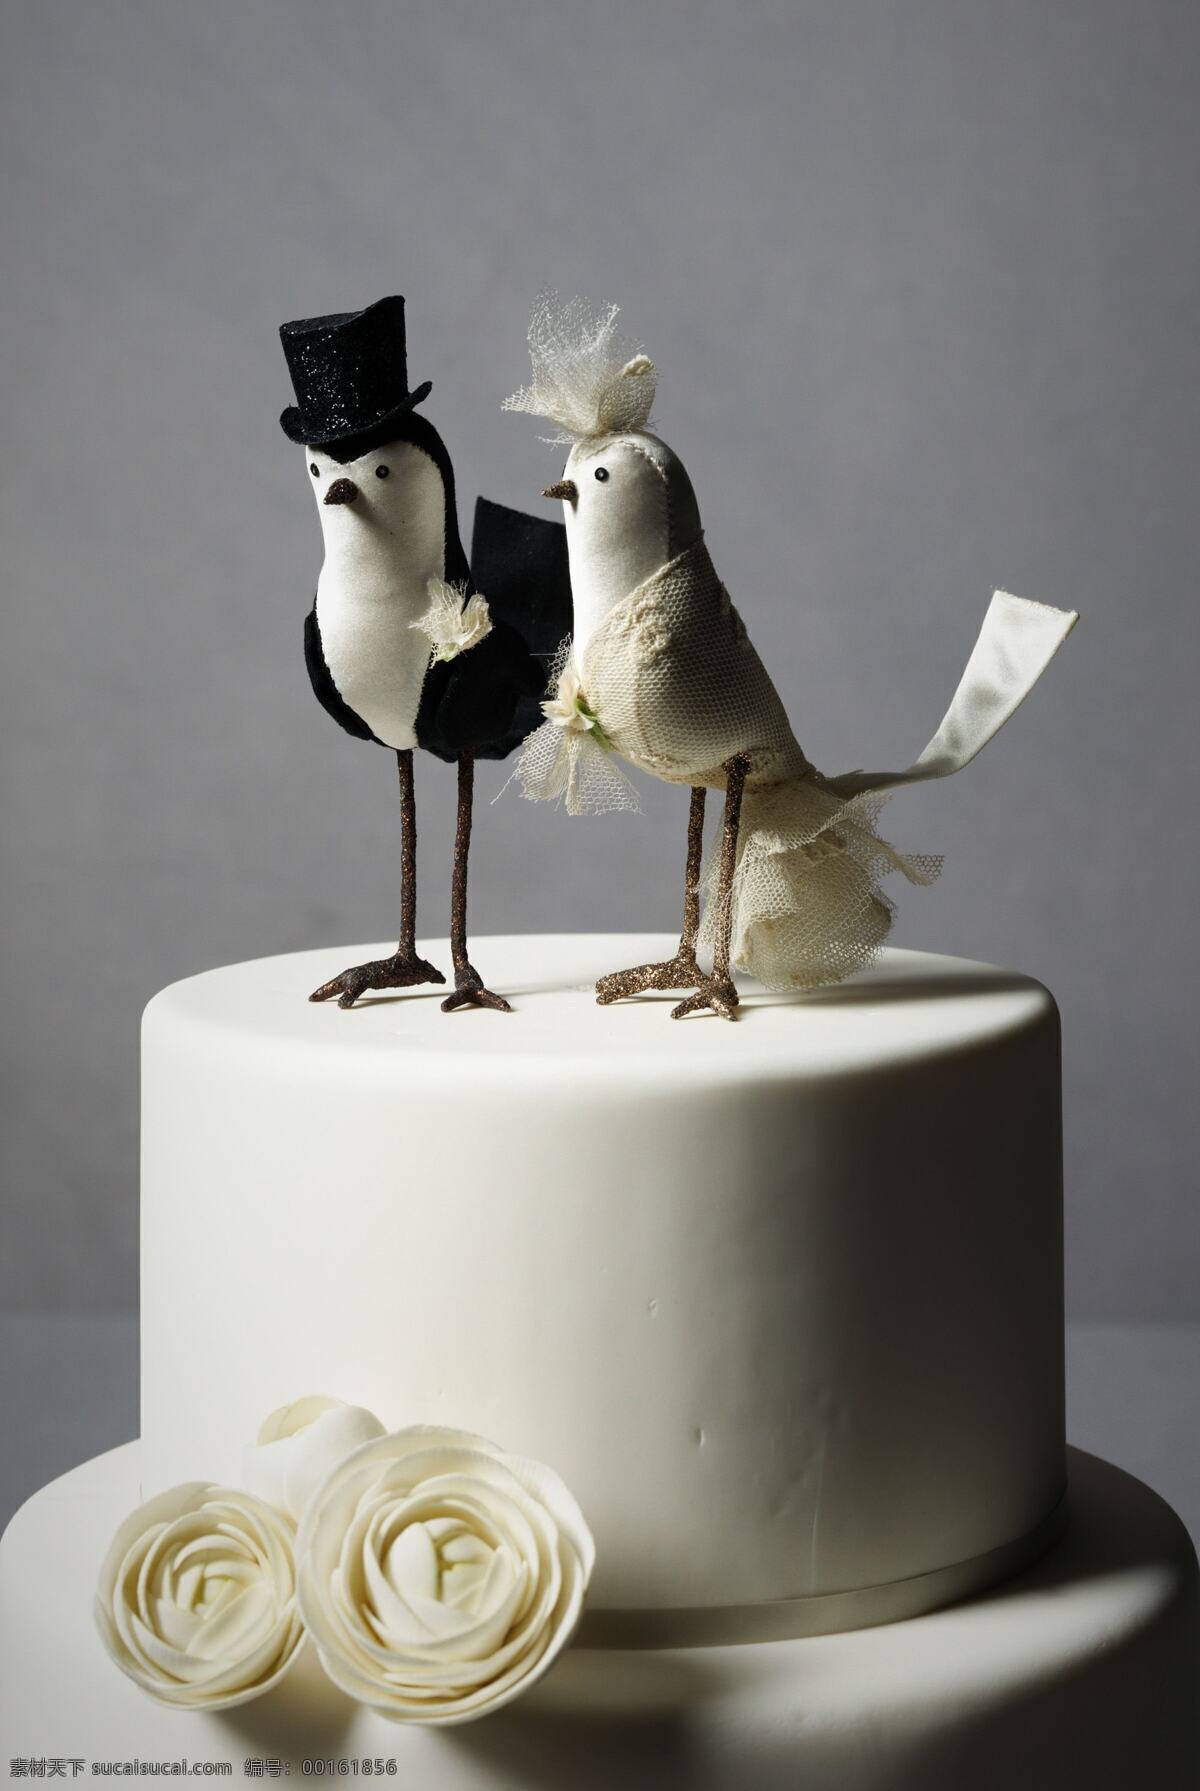 餐饮美食 创意蛋糕 蛋糕 点心 婚礼蛋糕 经典 精致 美食 婚礼 造型蛋糕 梦幻蛋糕 礼品蛋糕 双层蛋糕 西餐美食 psd源文件